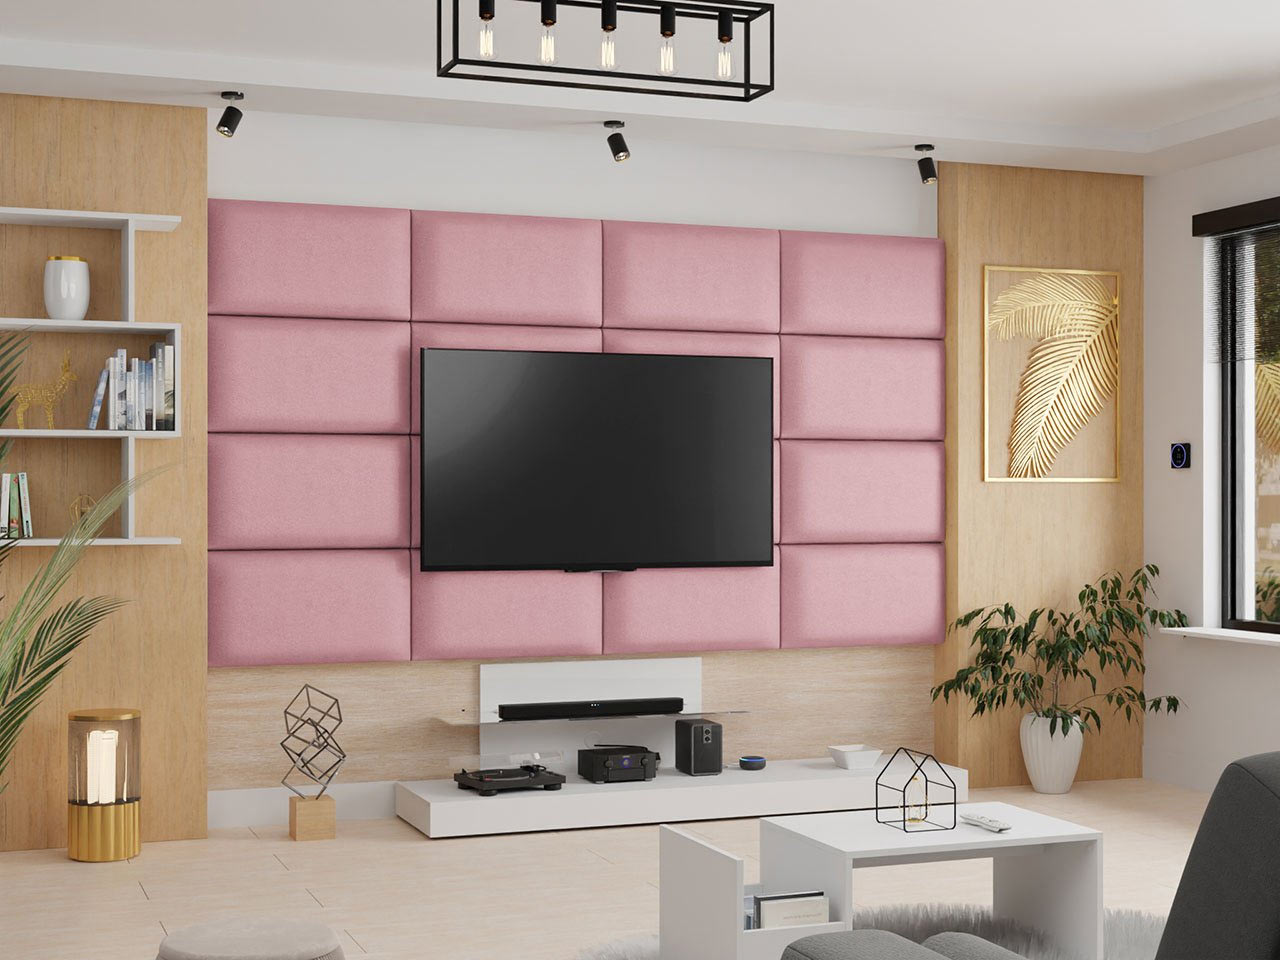 Čalouněné panely odhluční stěnu za televizí.